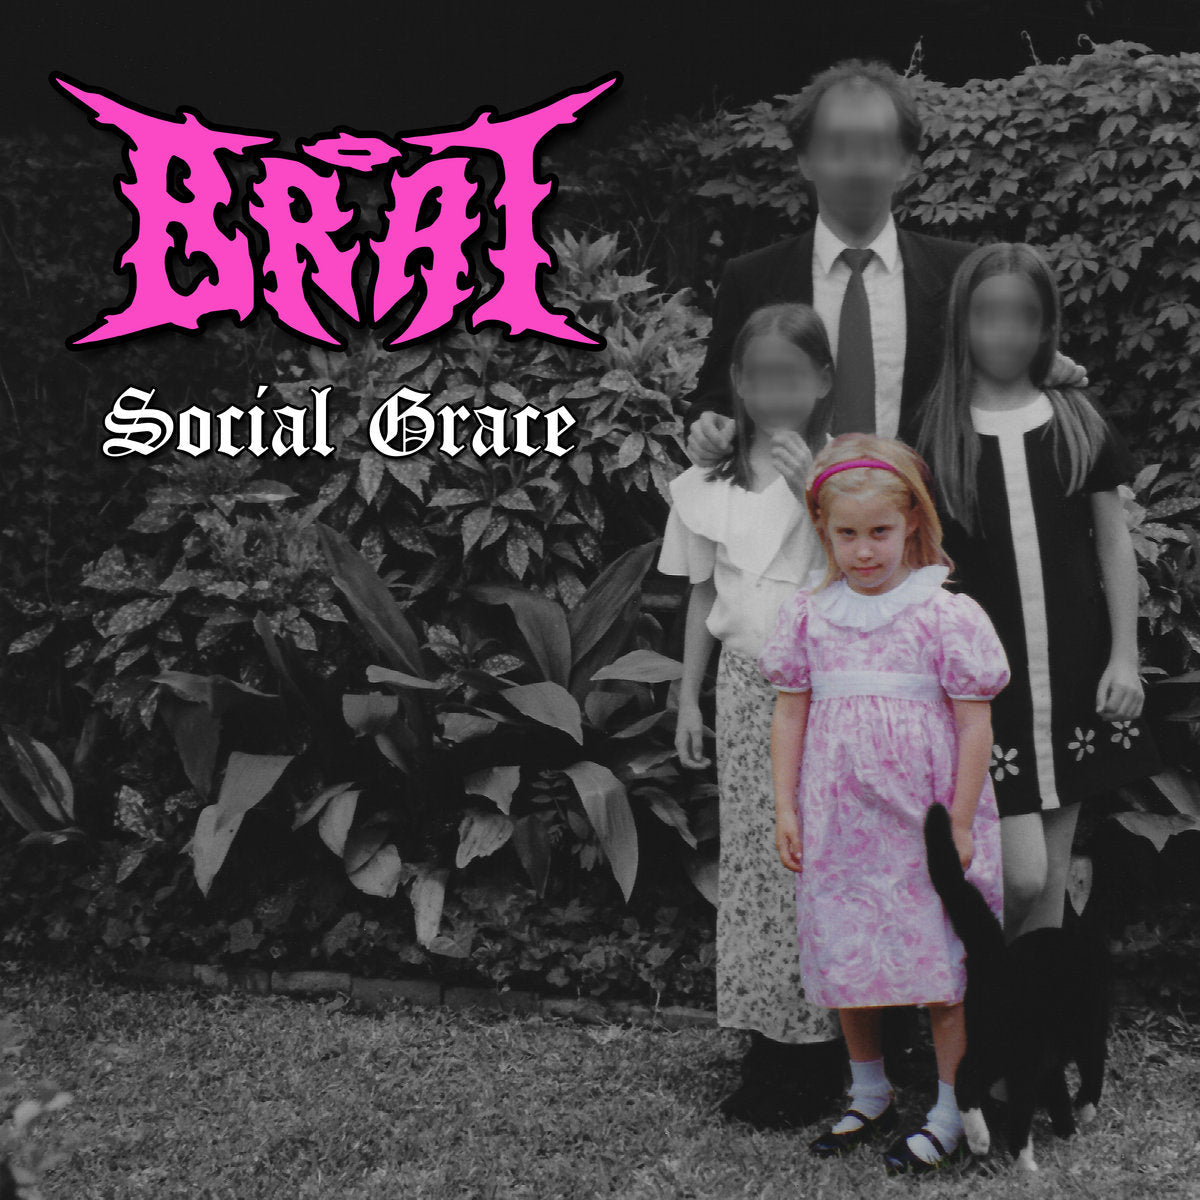 BRAT - Social Grace - LP - White & Pink Splatter Vinyl